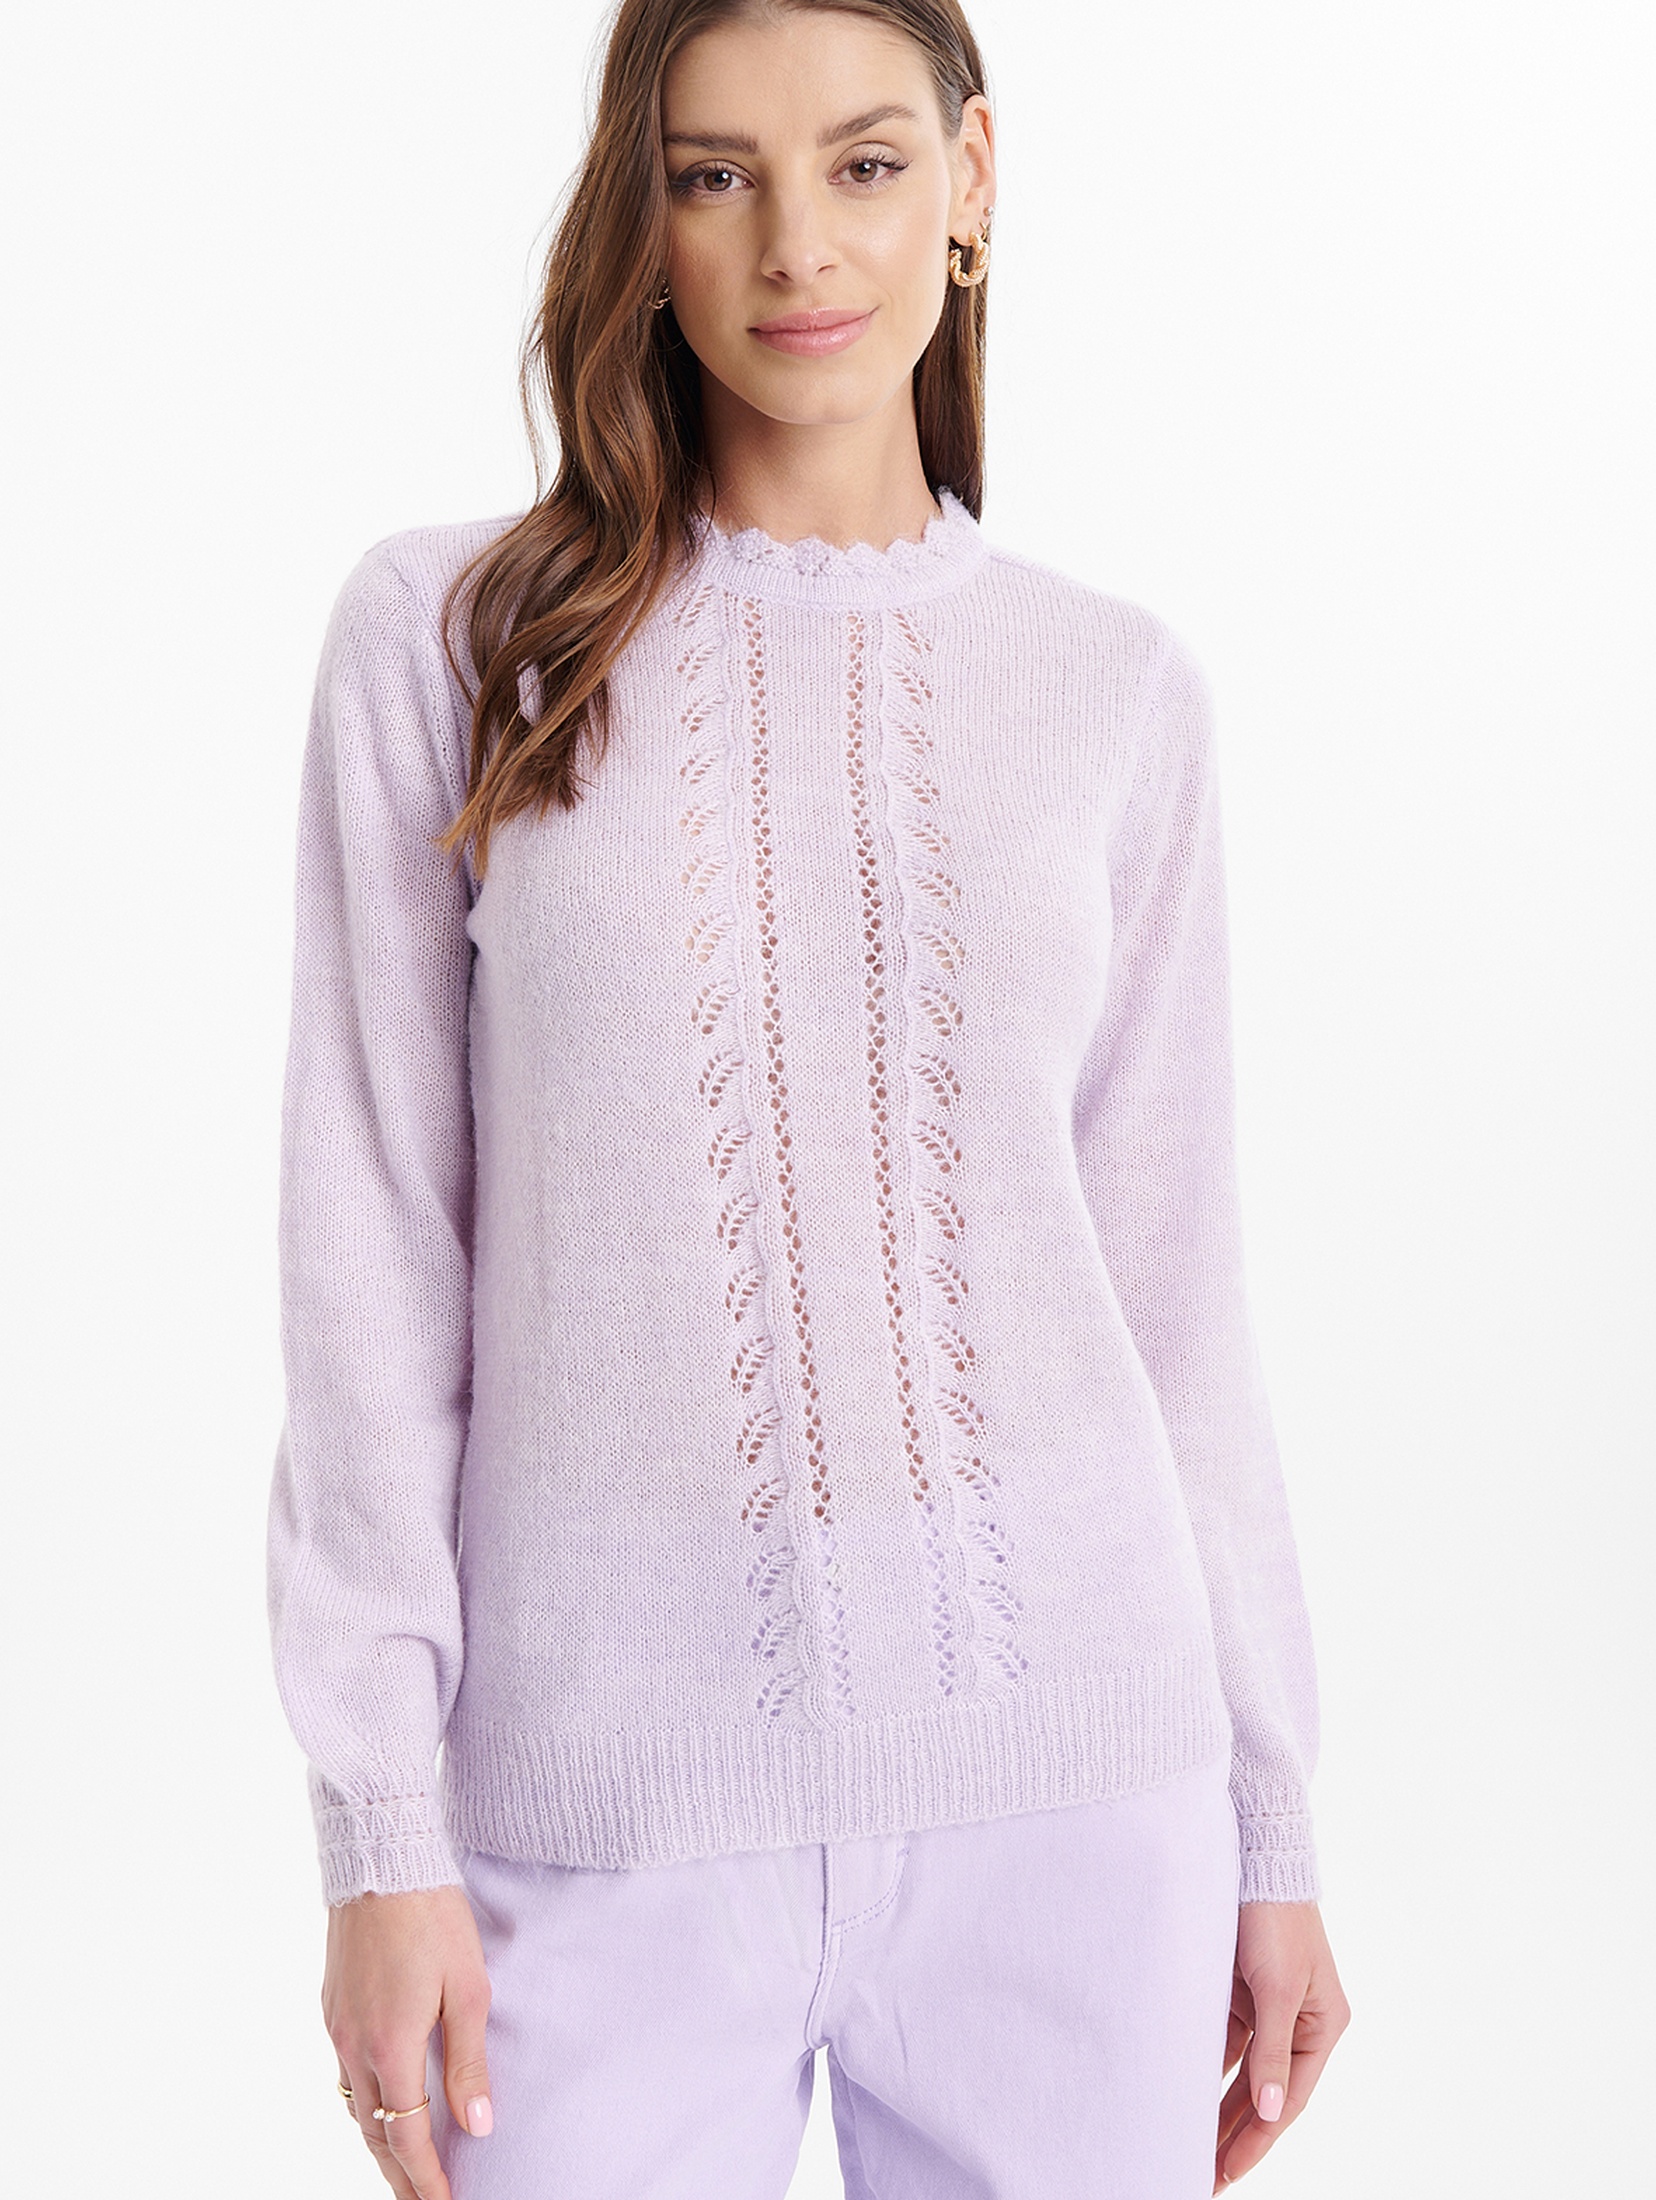 Ażurowy sweter damski fioletowy